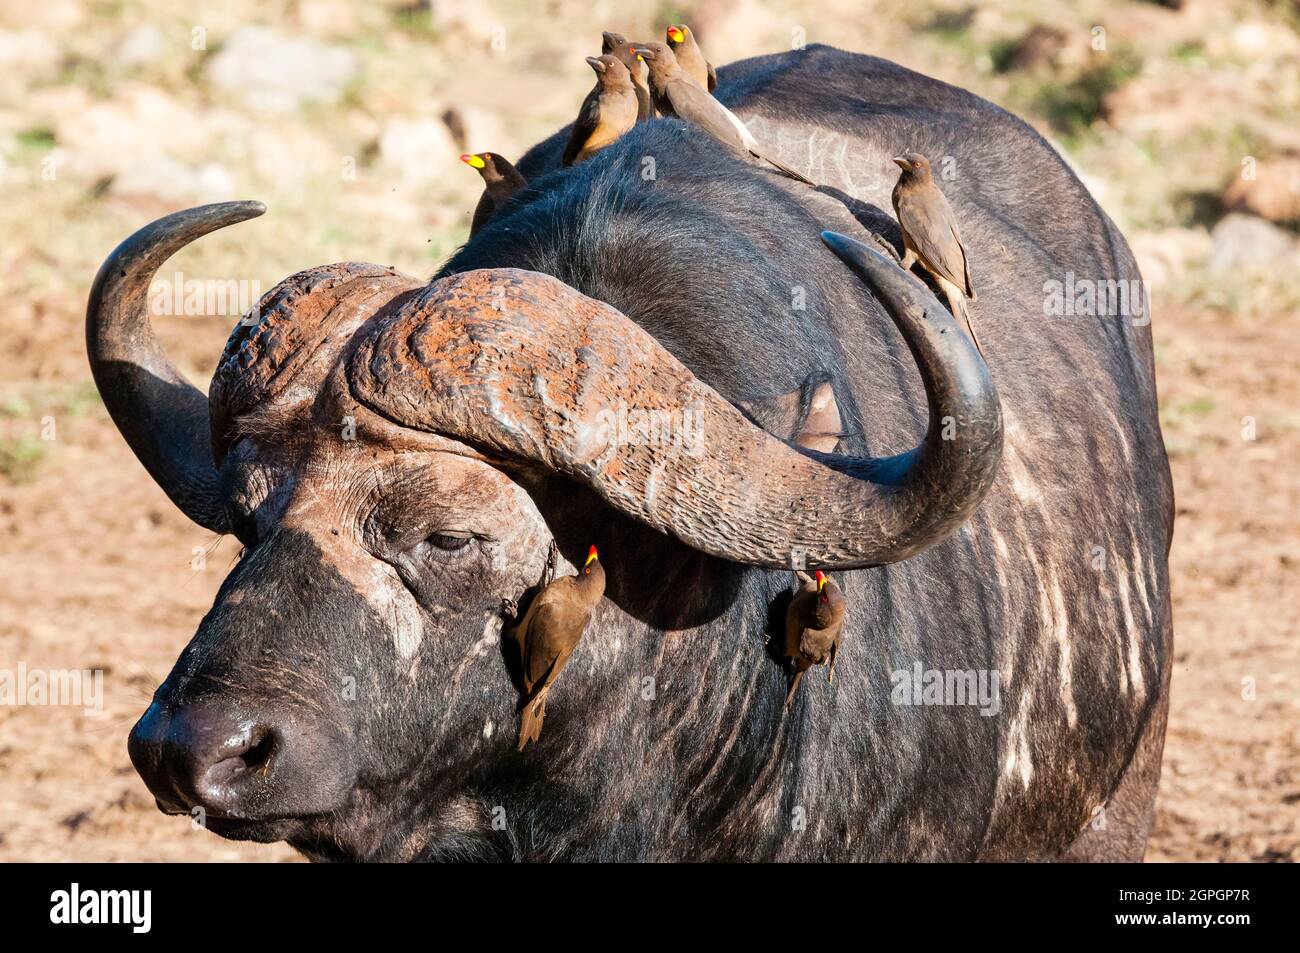 Kenia, Taita Hills Wildlife Sanctuary, ein afrikanischer Büffel (syncerus Caffer), Oxpeckers (Buphagus erythrorhynchus) auf seinem Rücken Stockfoto